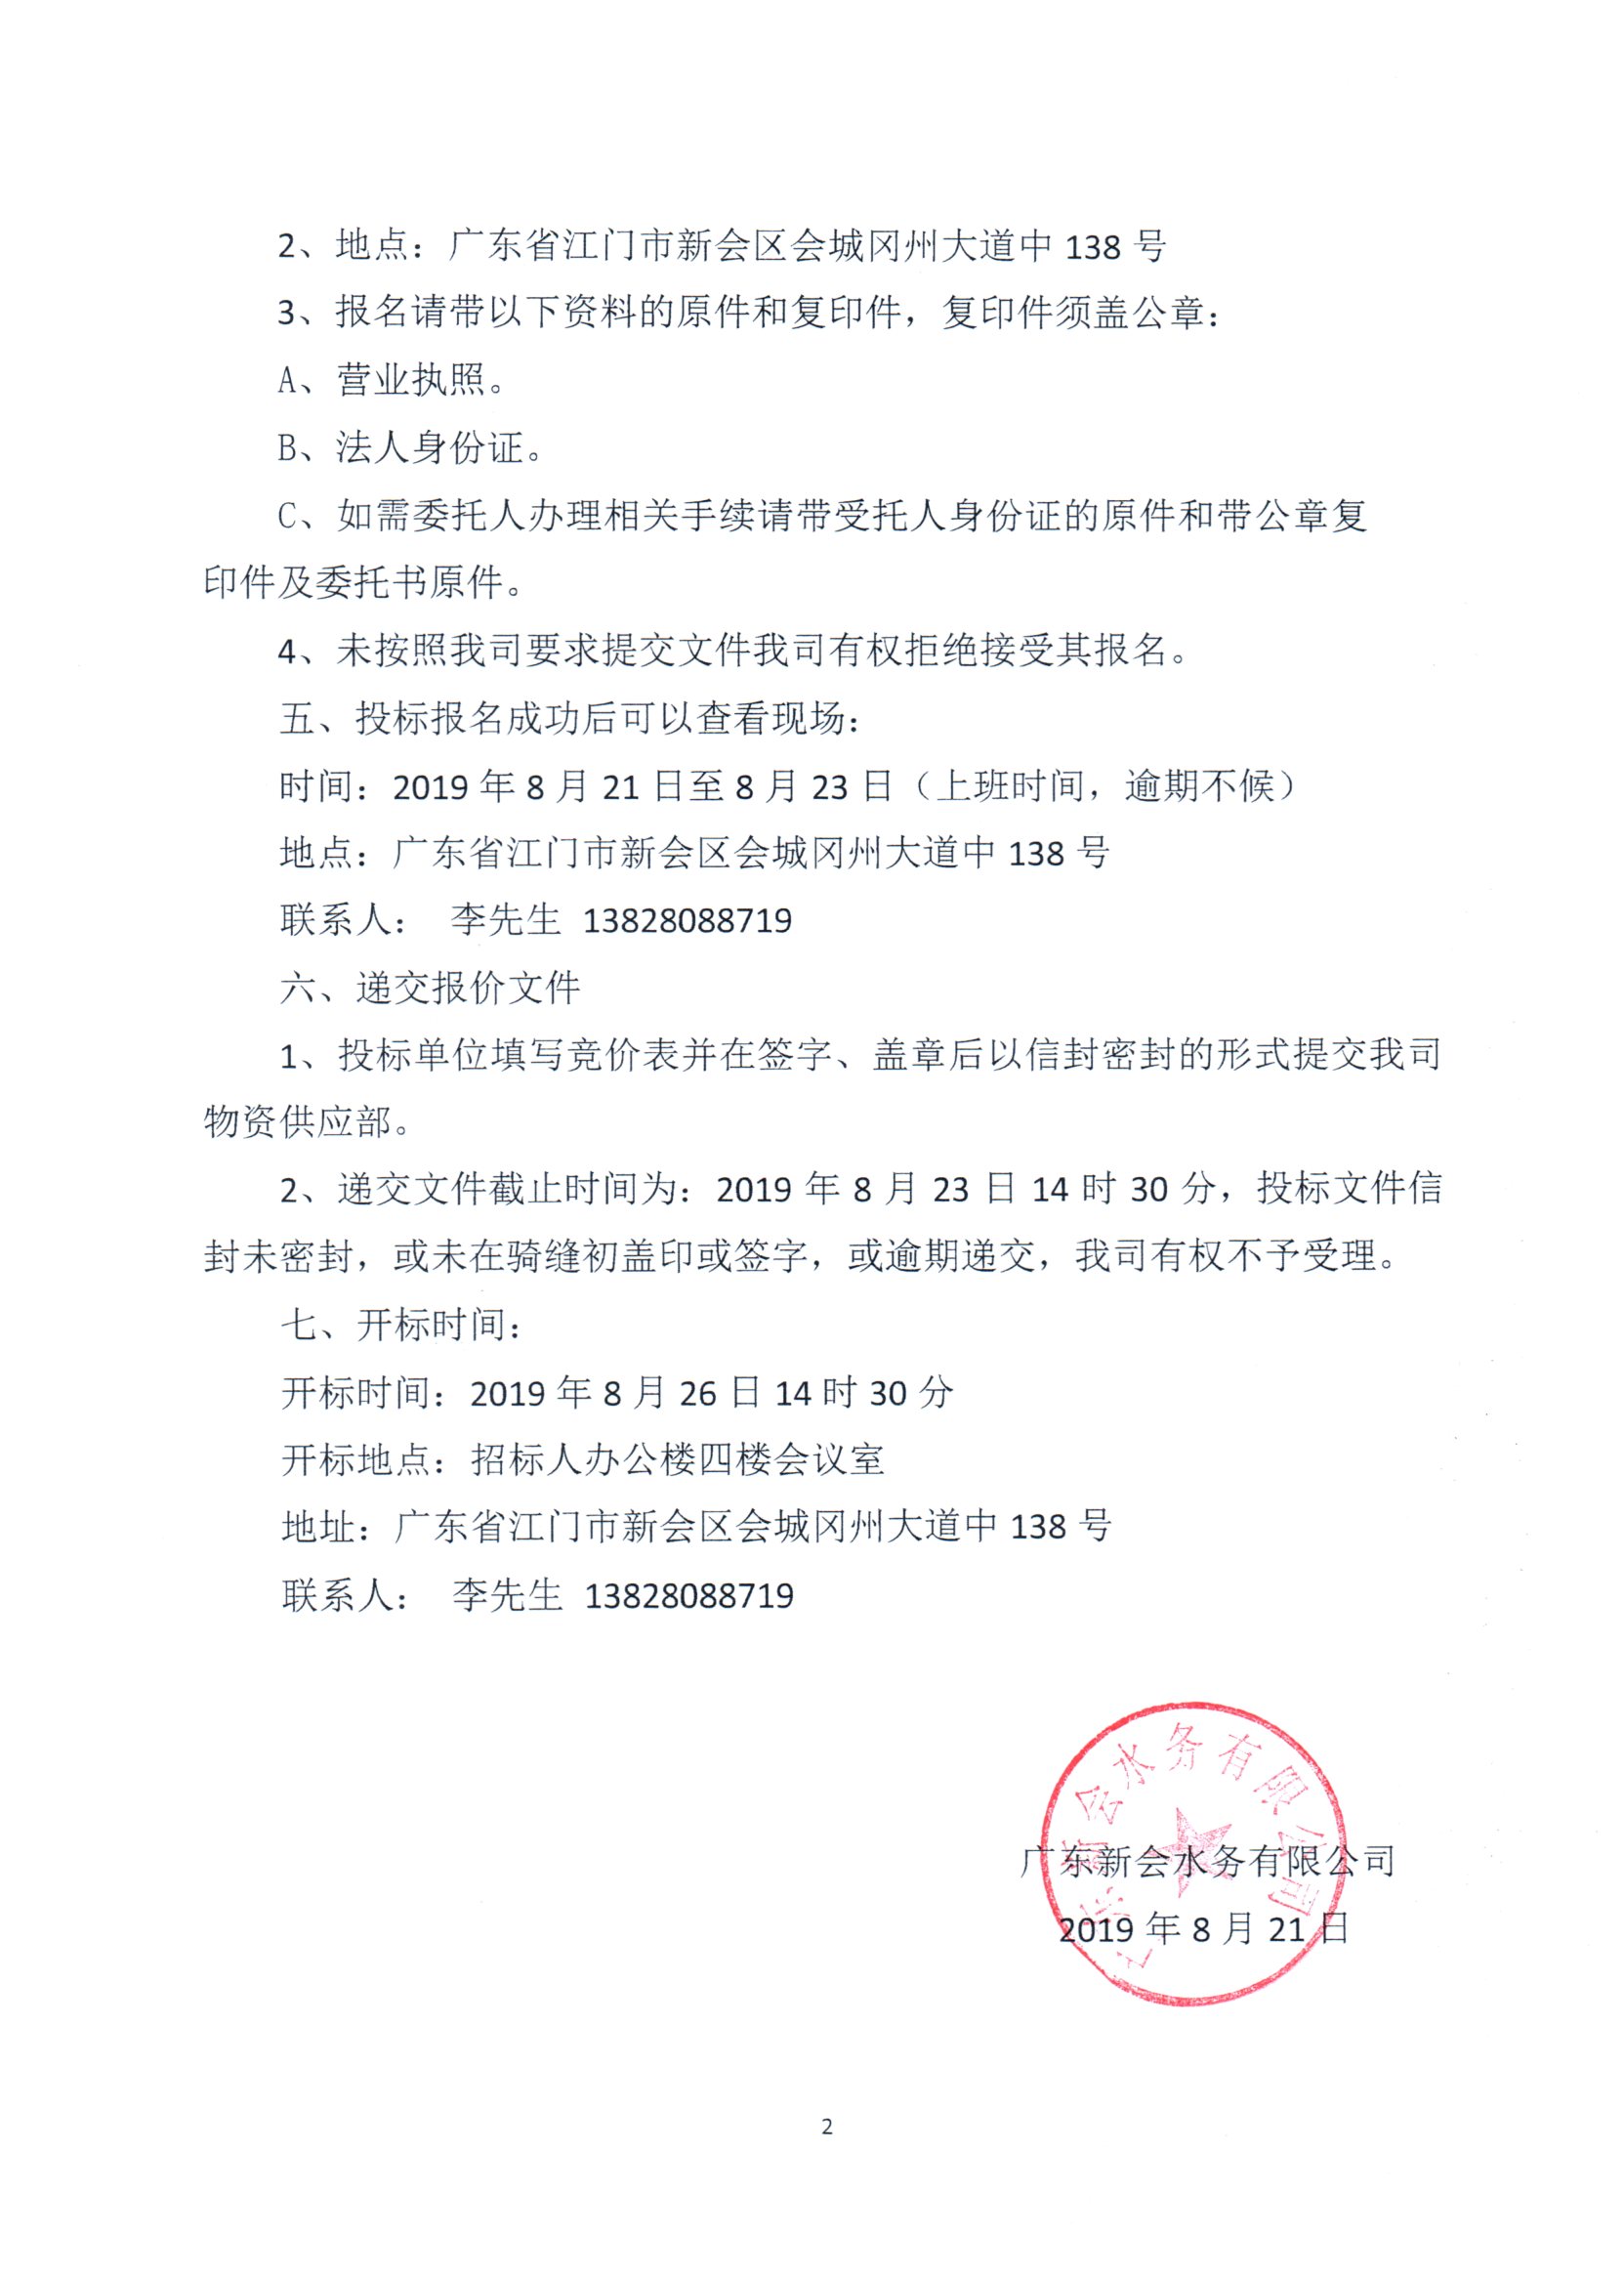 广东新会水务有限公司废旧钢管竞价处置公告图2.jpg